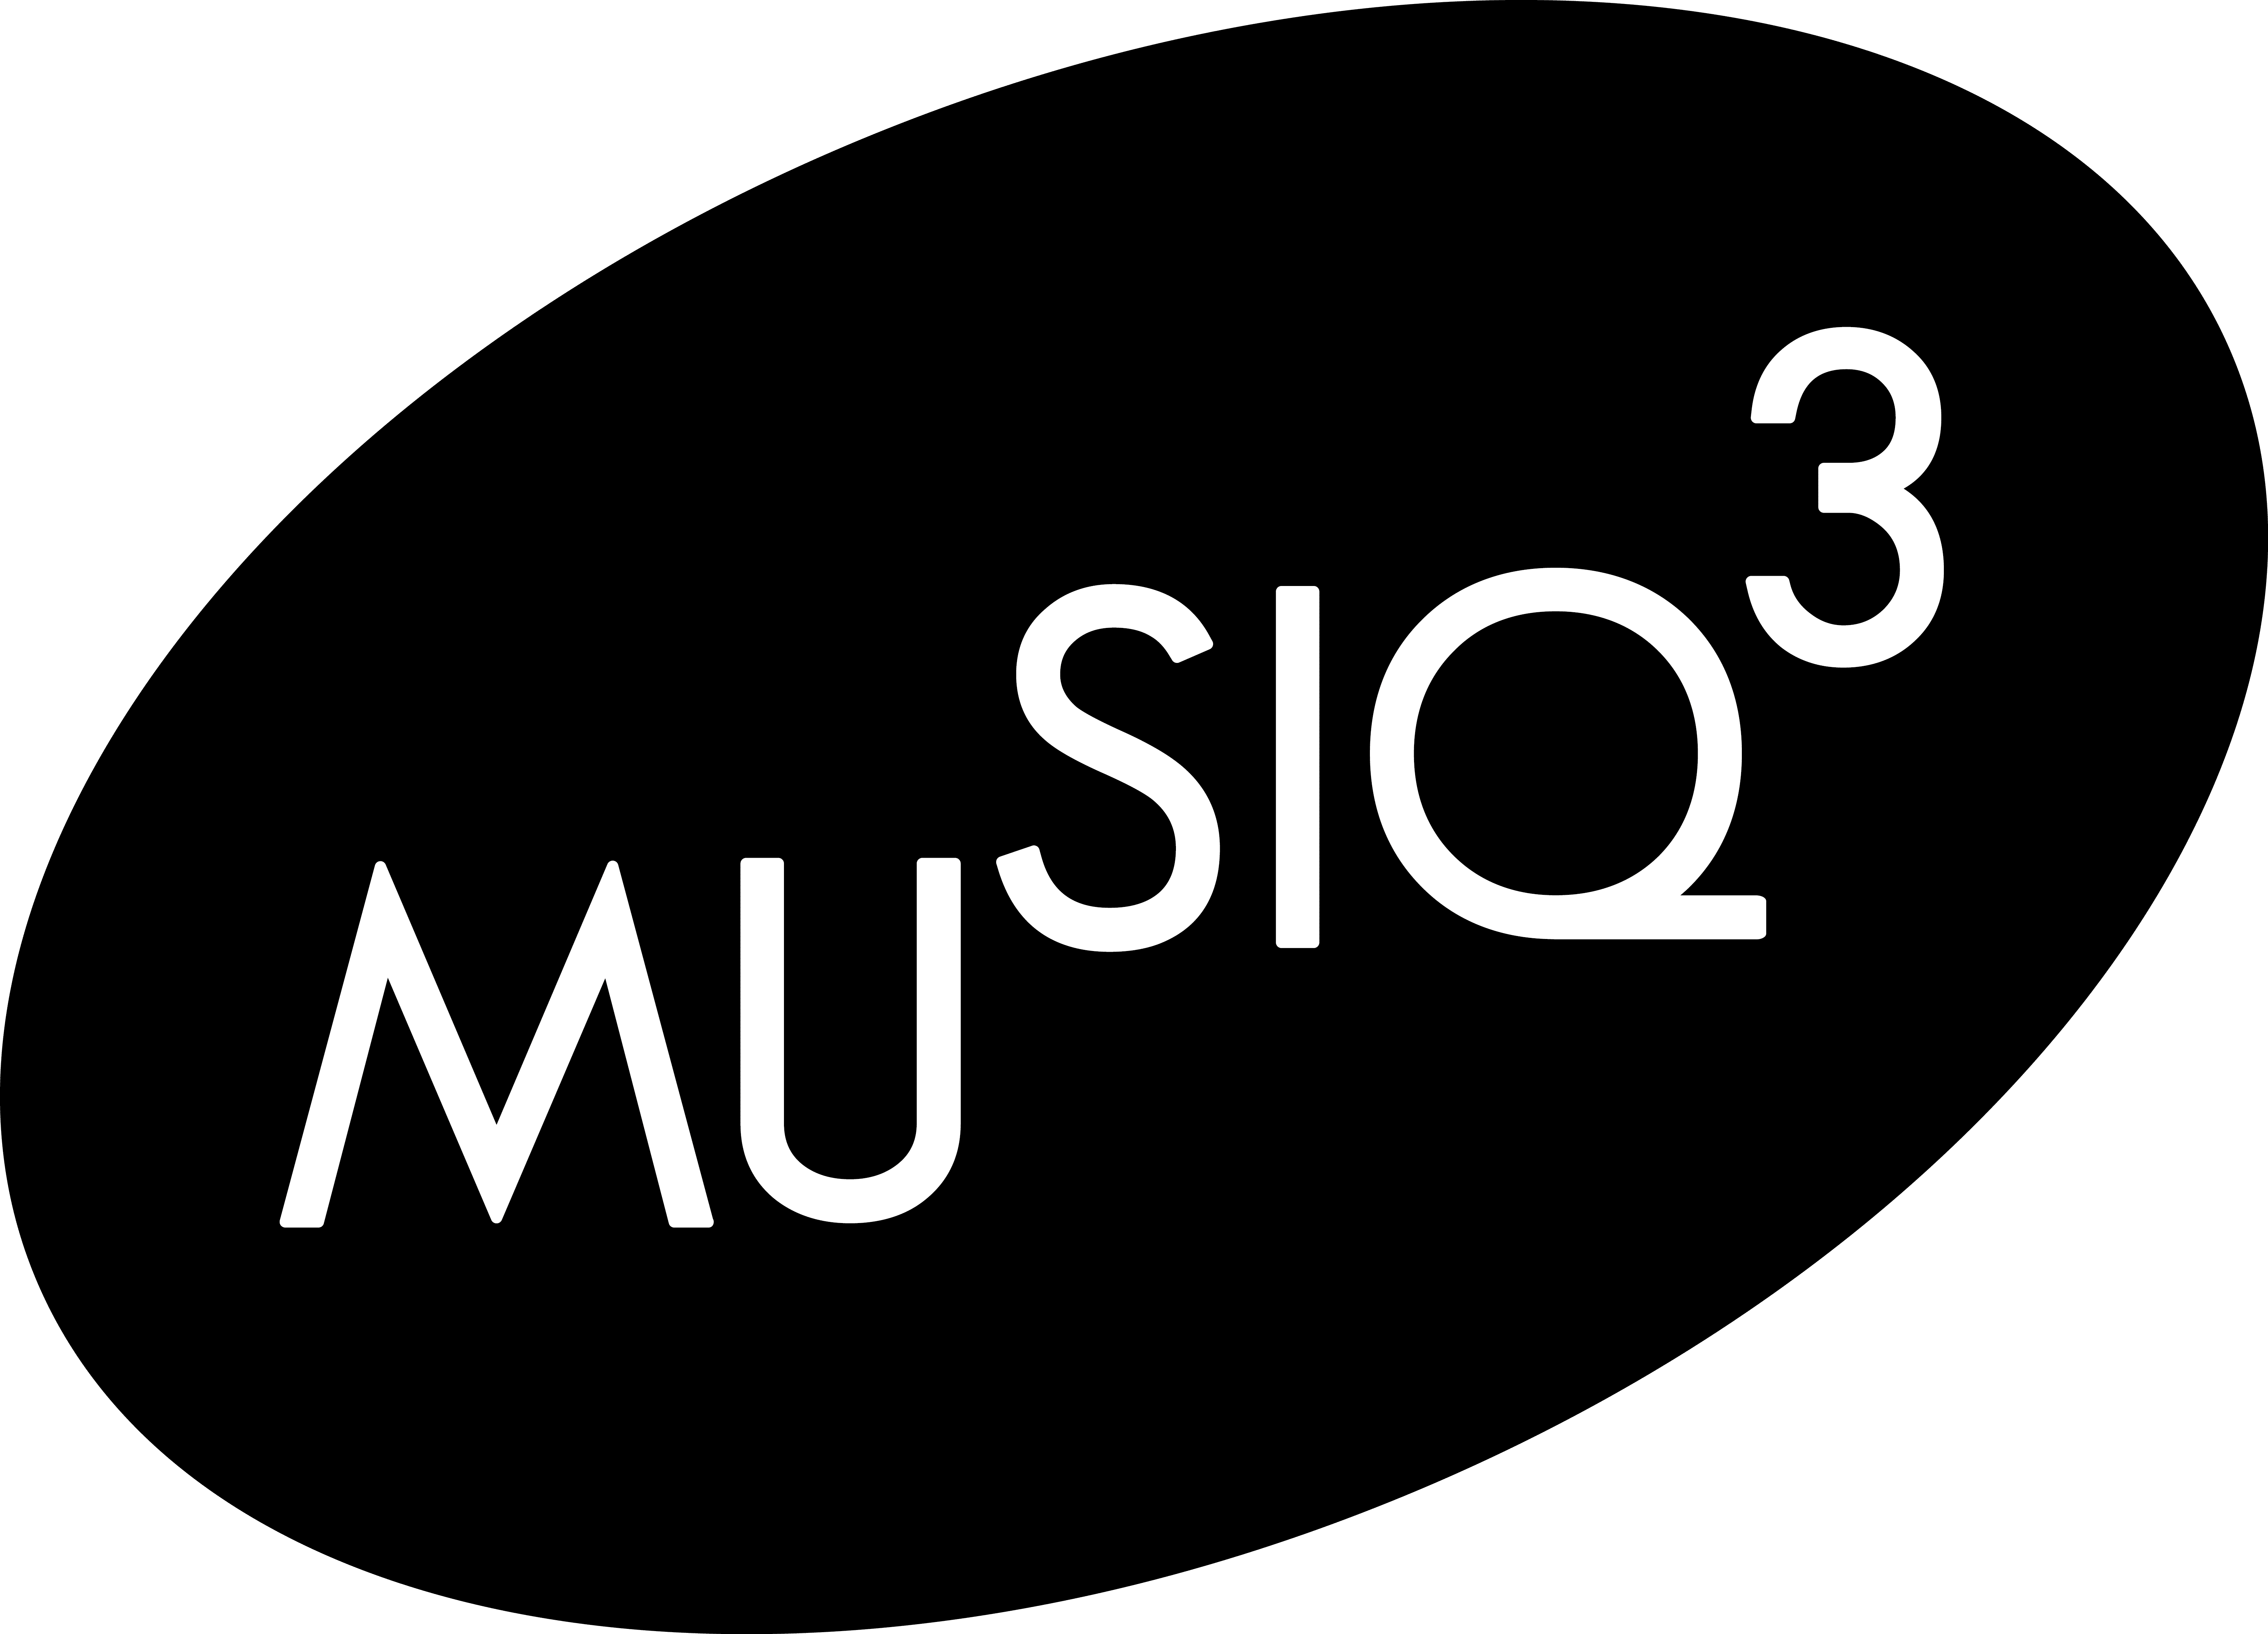 Musiq 3 logo